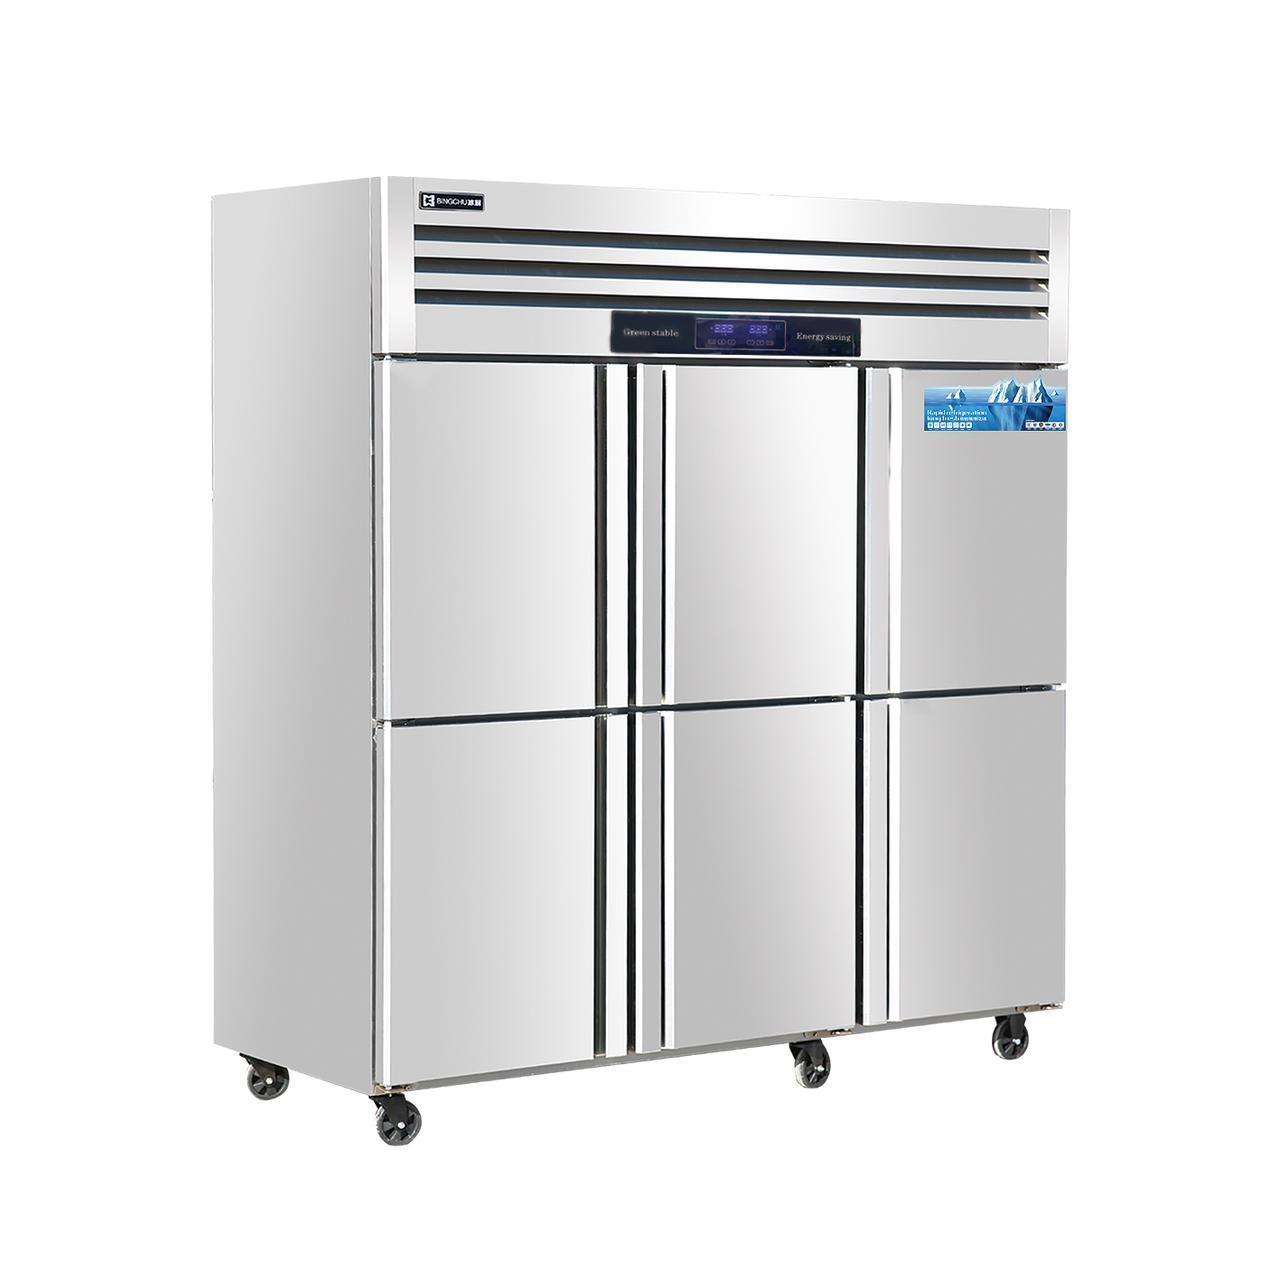 Холодильный шкаф +10 до +2. 6 дверей. VCC5-1810B